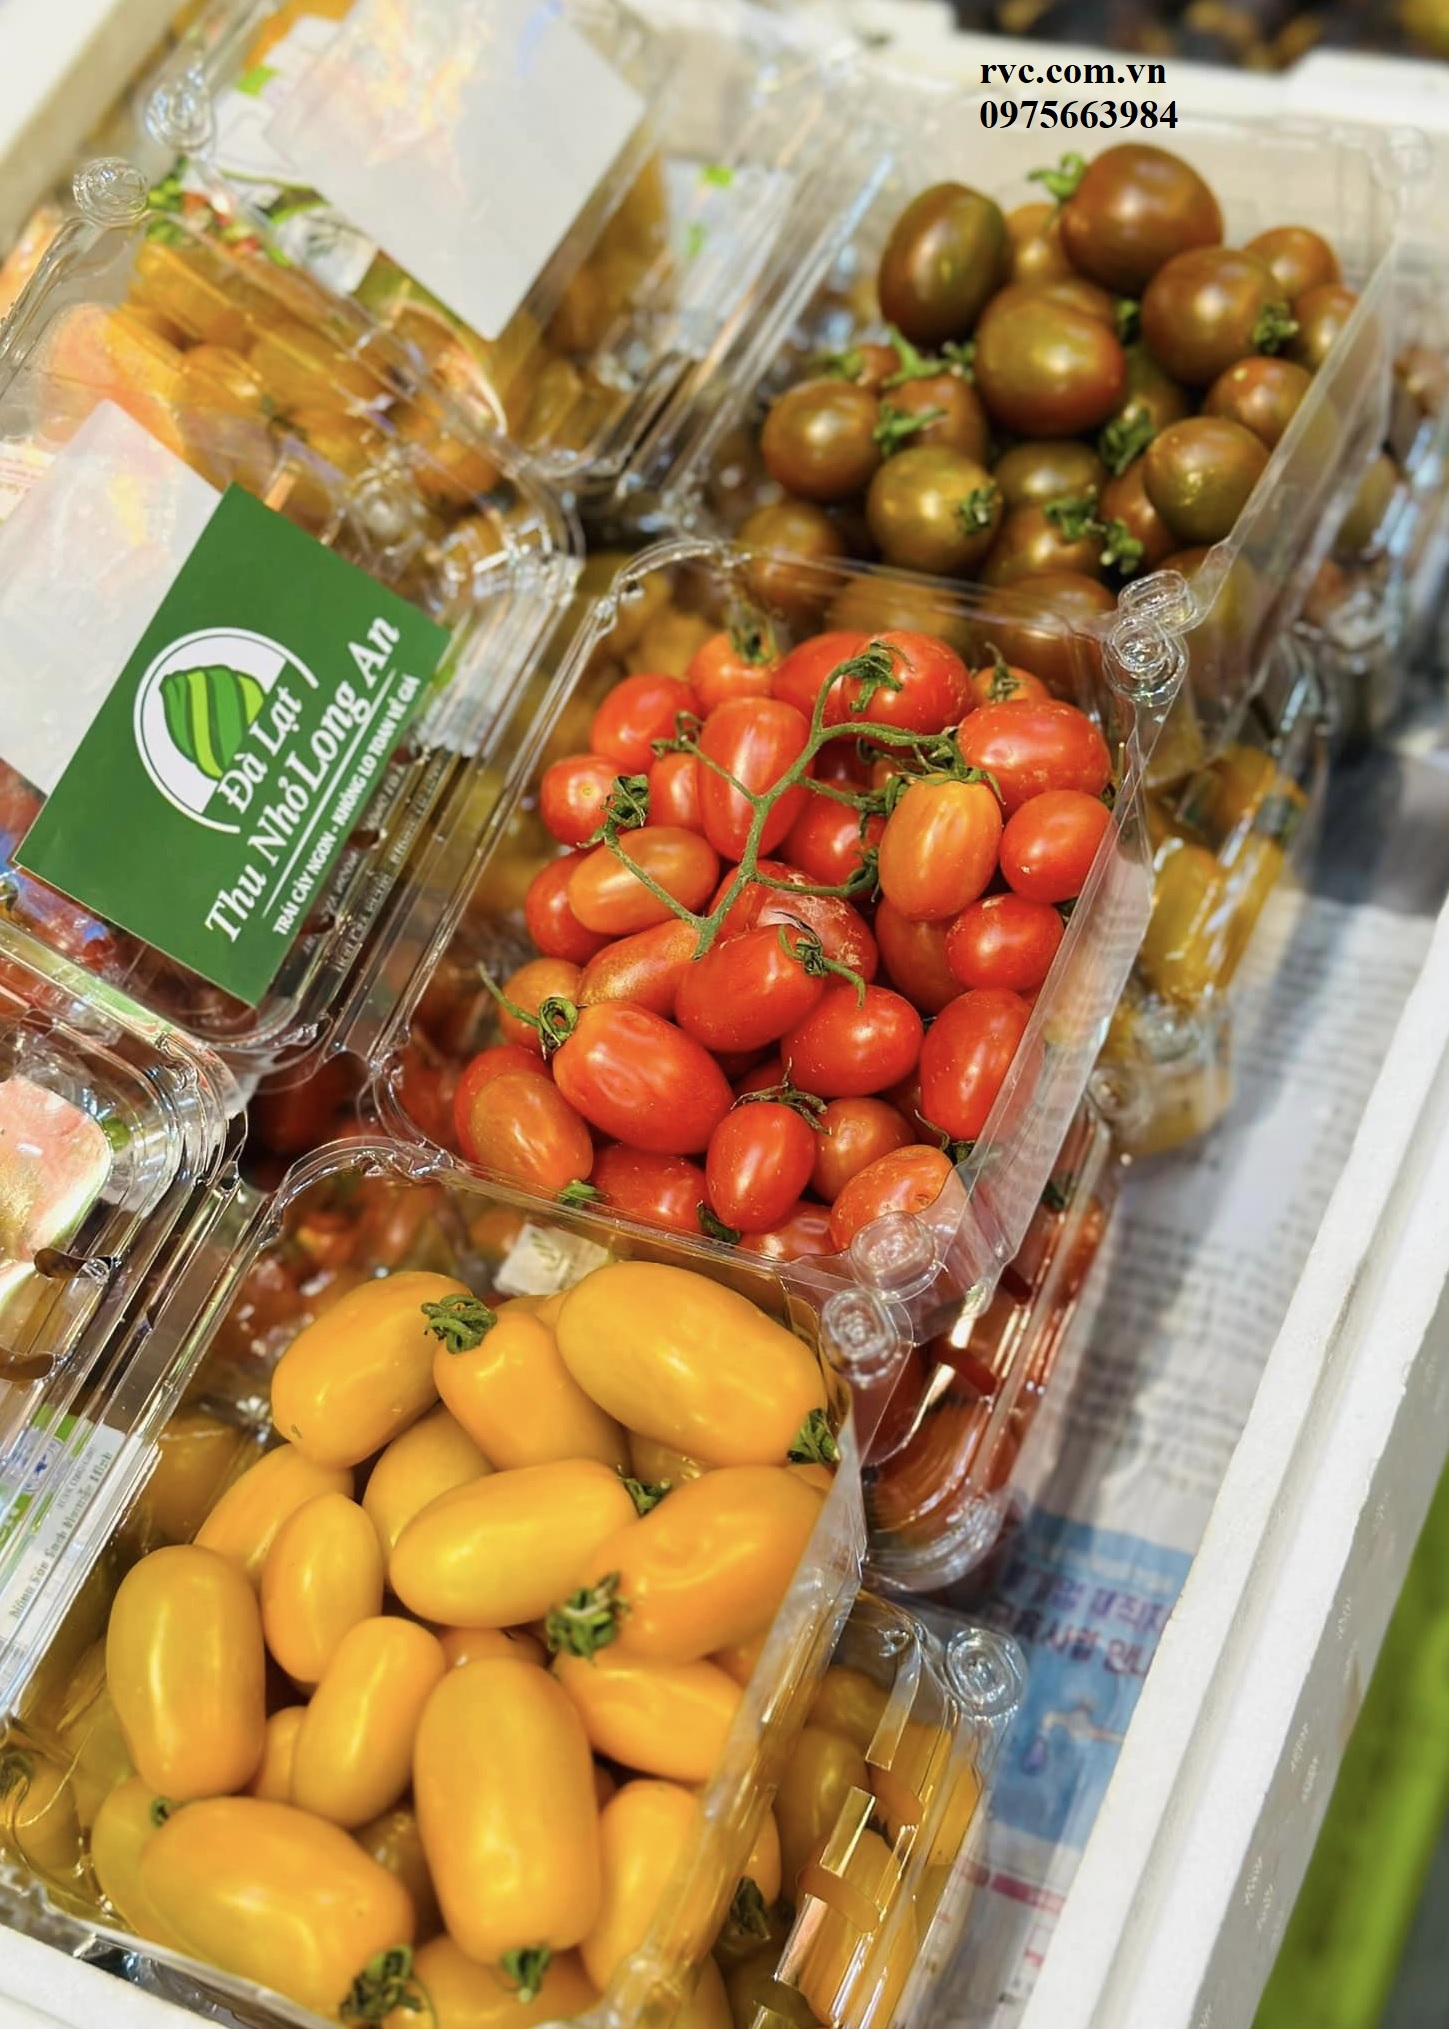 Chuyên sỉ hộp nhựa đựng hoa quả trên toàn quốc